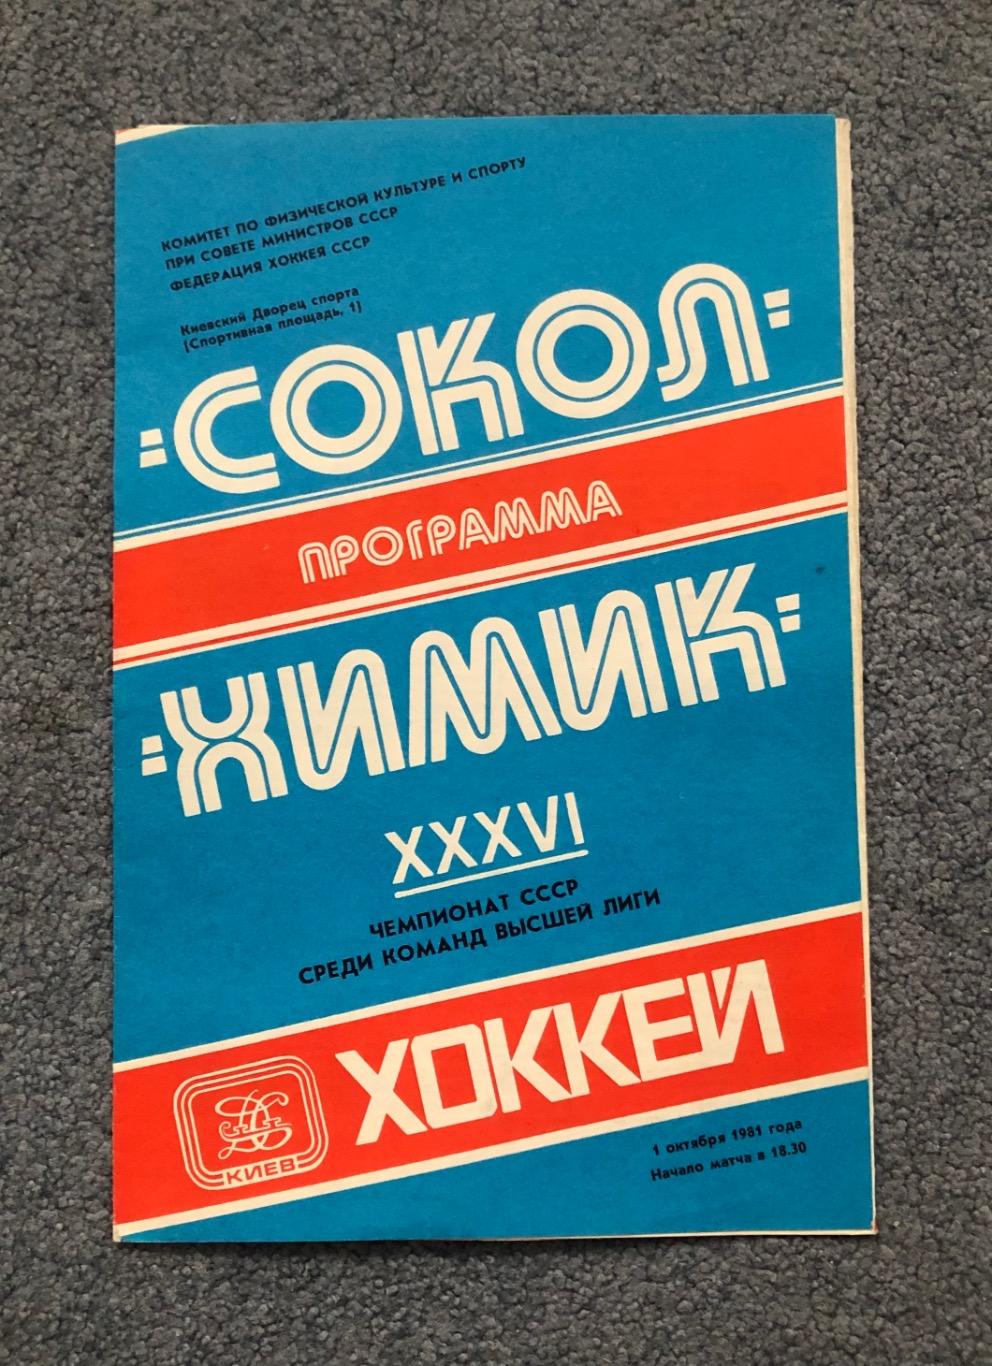 Сокол Киев - Химик Воскресенск, 01.10.1981